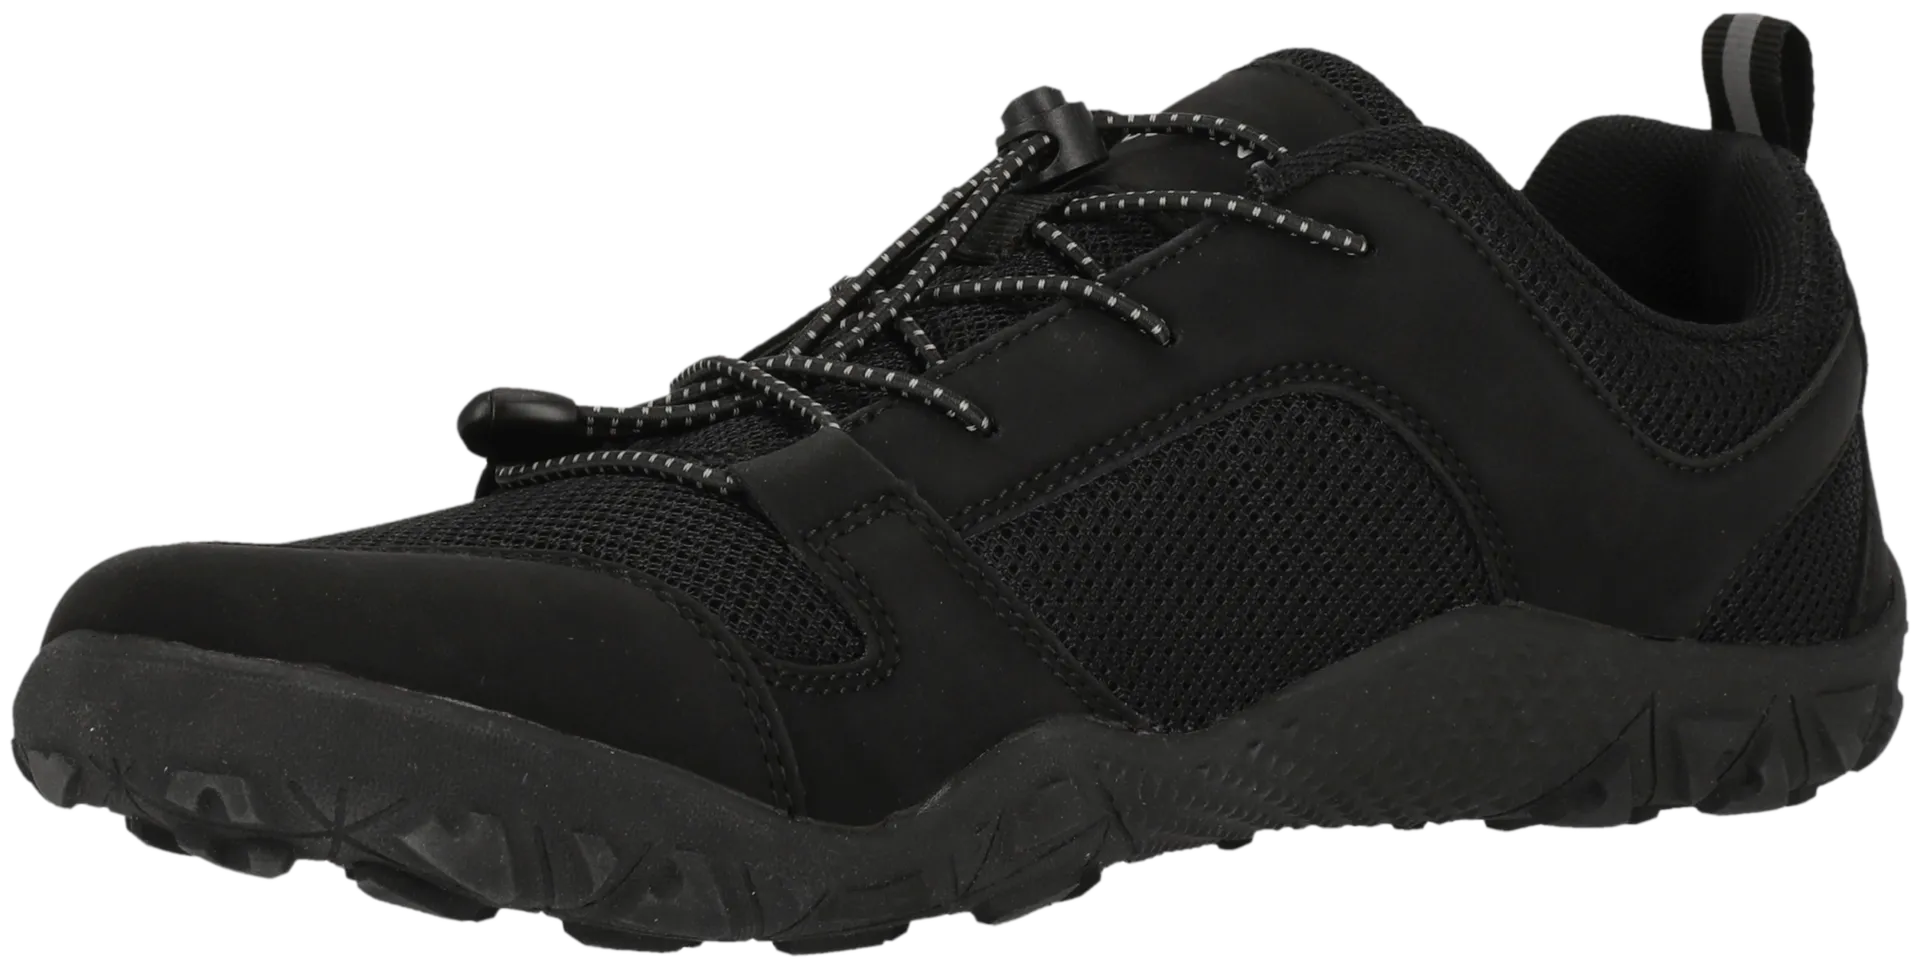 Endurance paljasjalkakenkä Kendy Barefoot Shoe unisex - 1001S Black Solid - 4